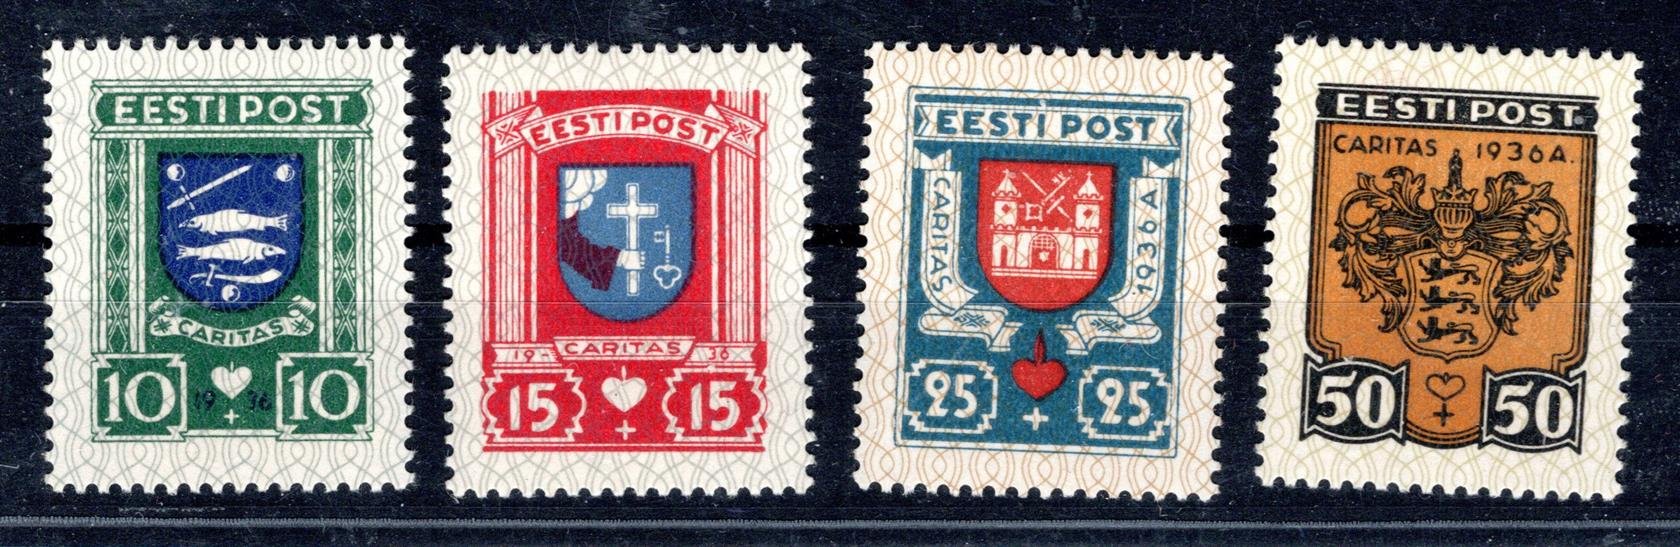 Estonsko - Mi. 109 - 12, státní znakiy